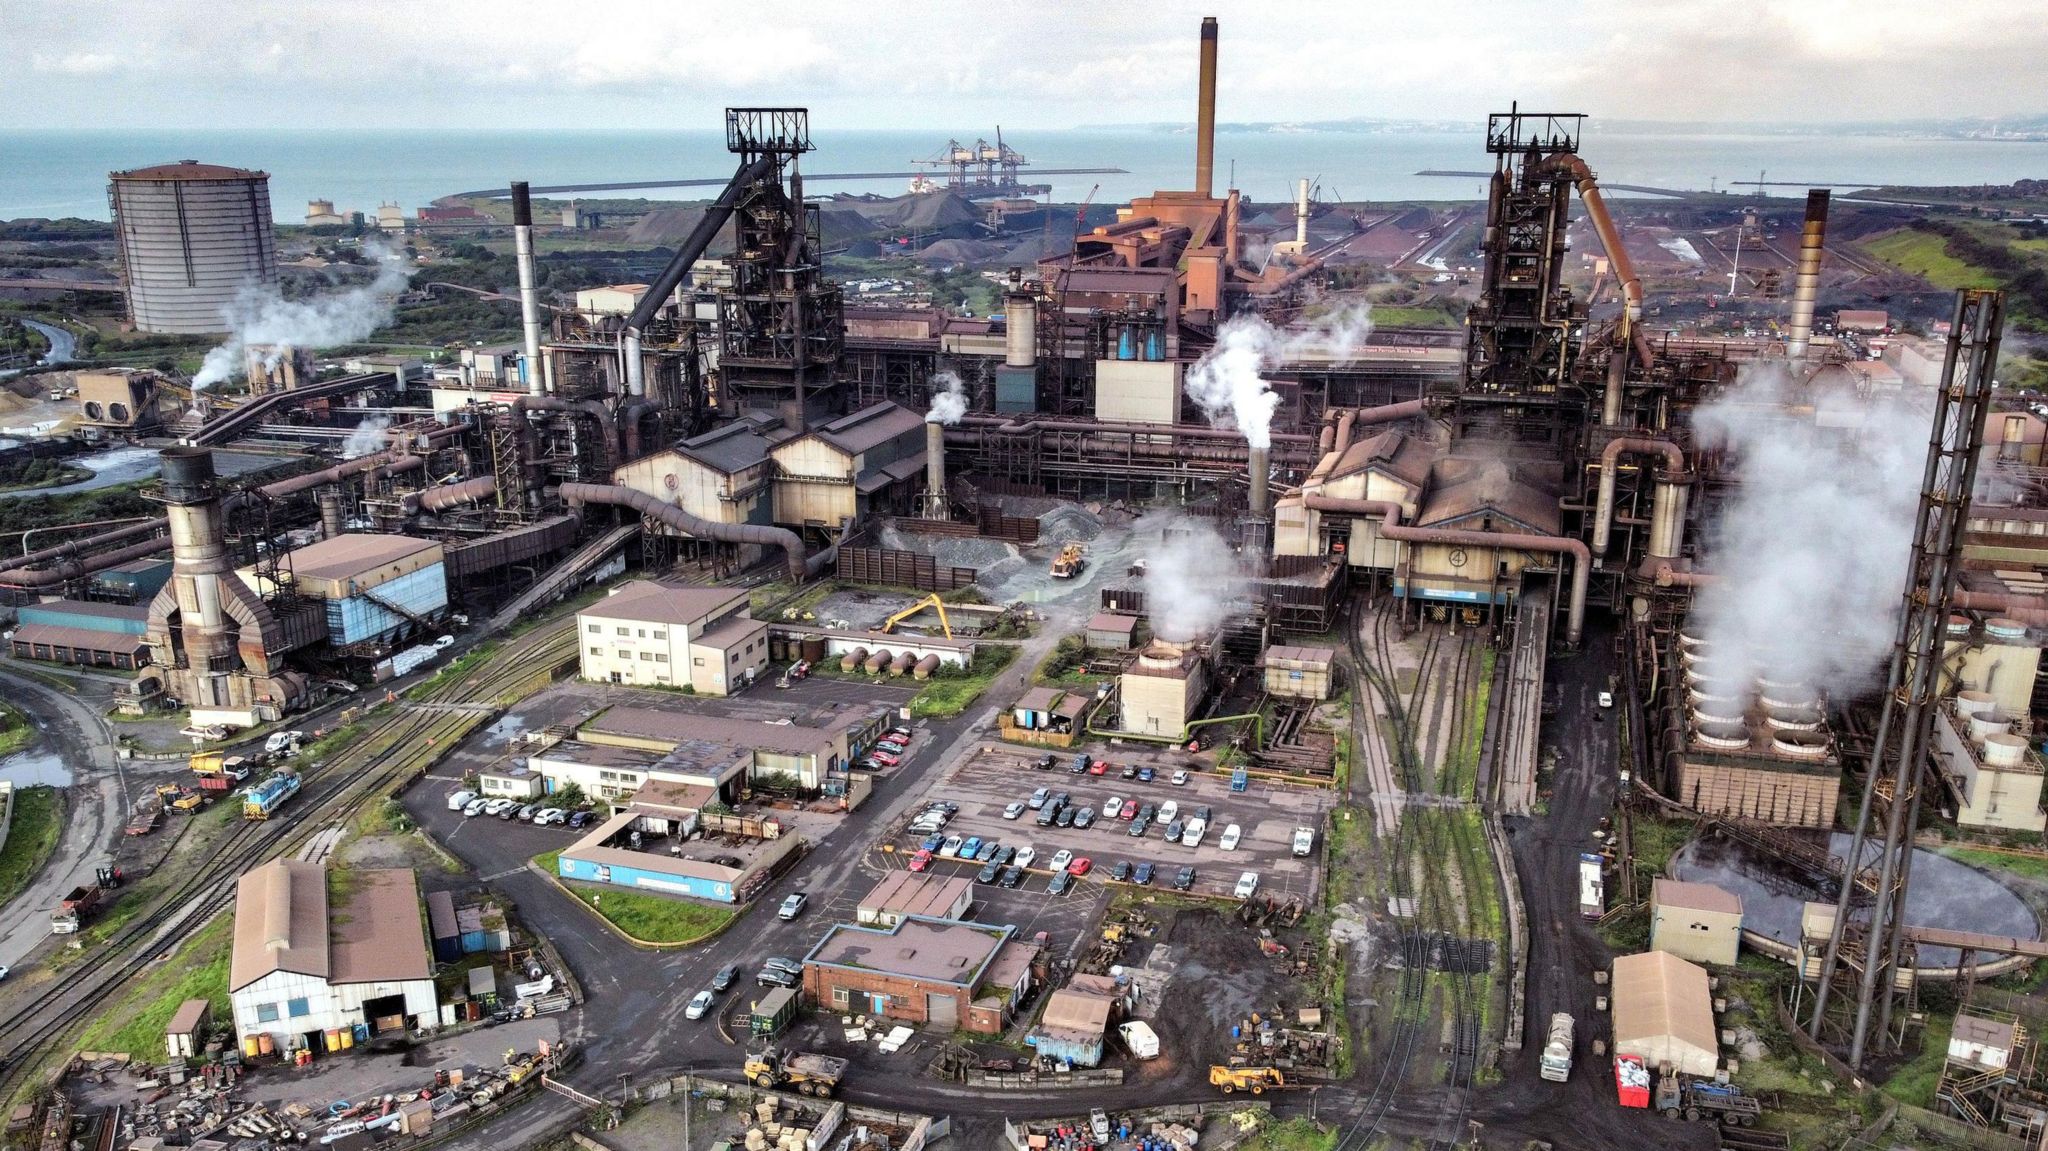 Tata's Port Talbot steel works